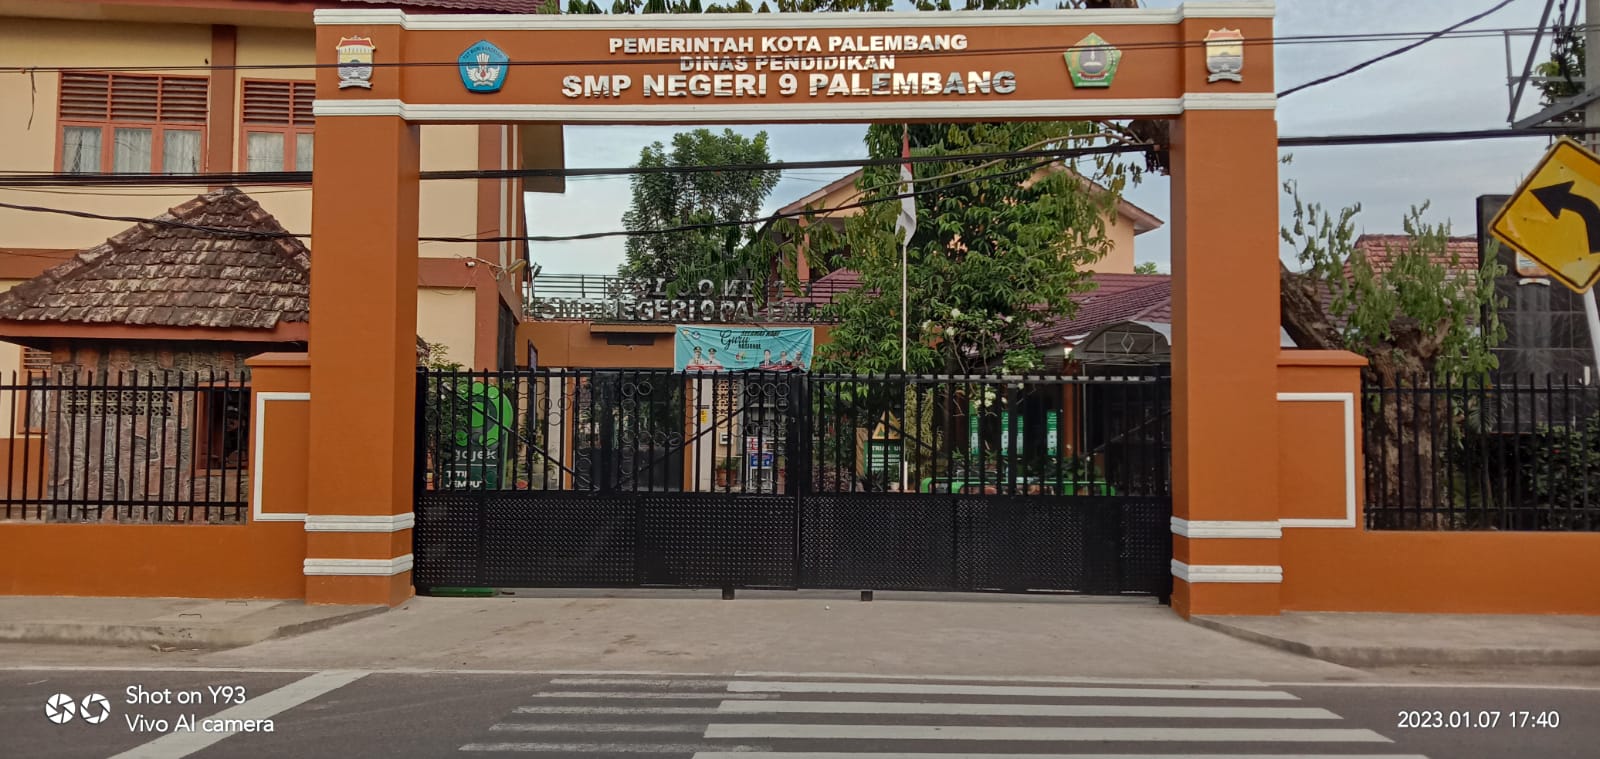 SMPN 9 Palembang Mulai Verifikasi Berkas PPDB, Daya Tampung Sekolah Sebanyak 352 Siswa dengan 11 Rombel 